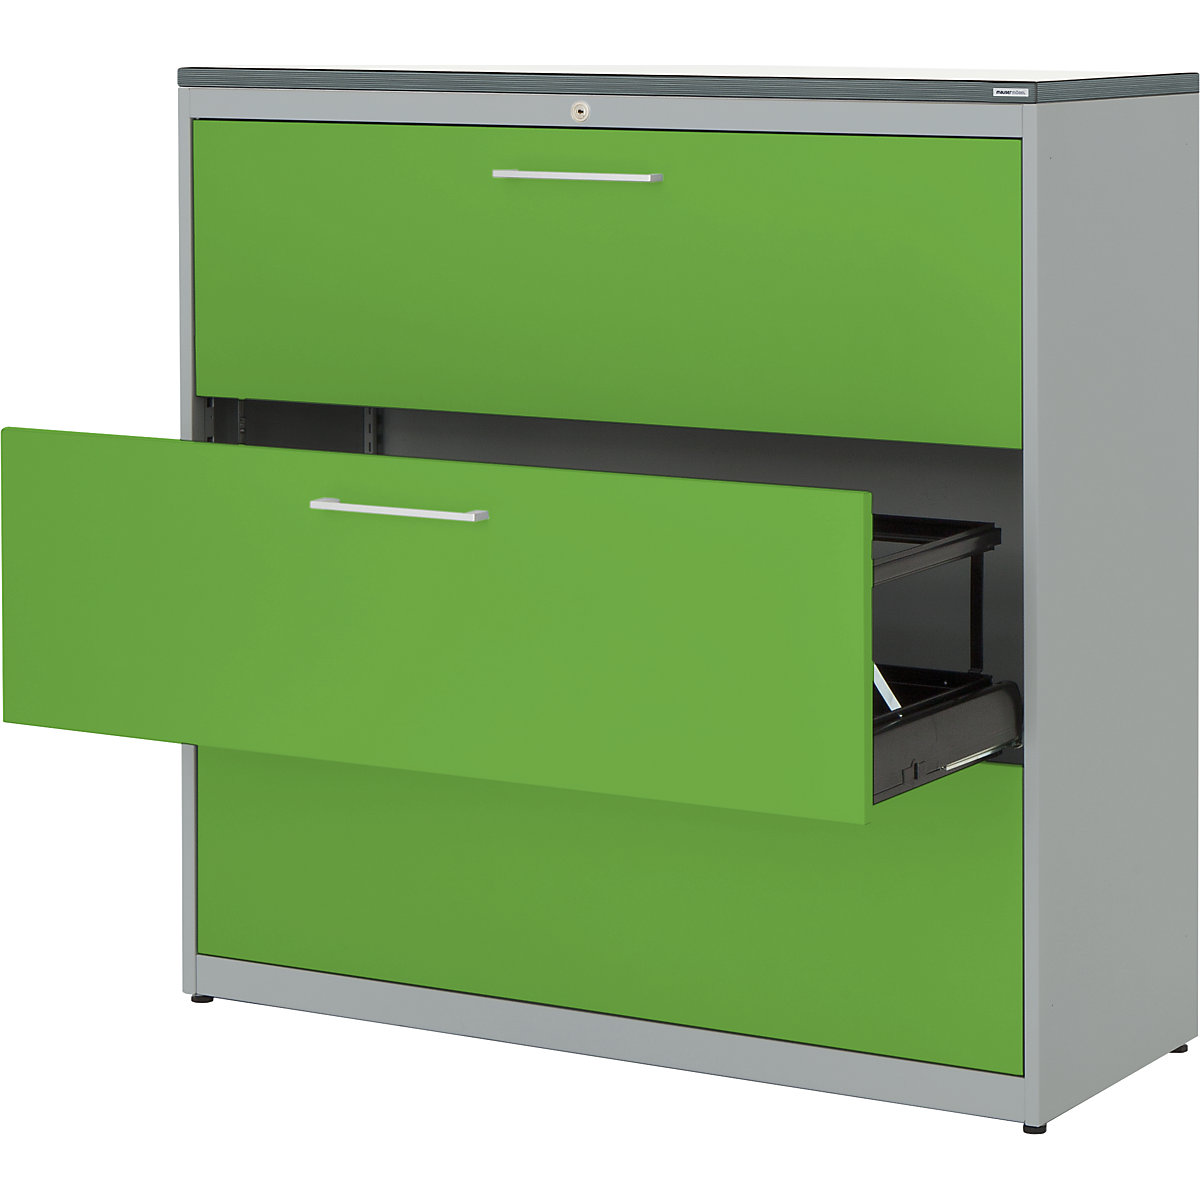 mauser – Dulap pentru registratură suspendată, placă superioară din plastic, 3 sertare, 3 rânduri, cu amortizare, alb aluminiu / verde gălbui / alb